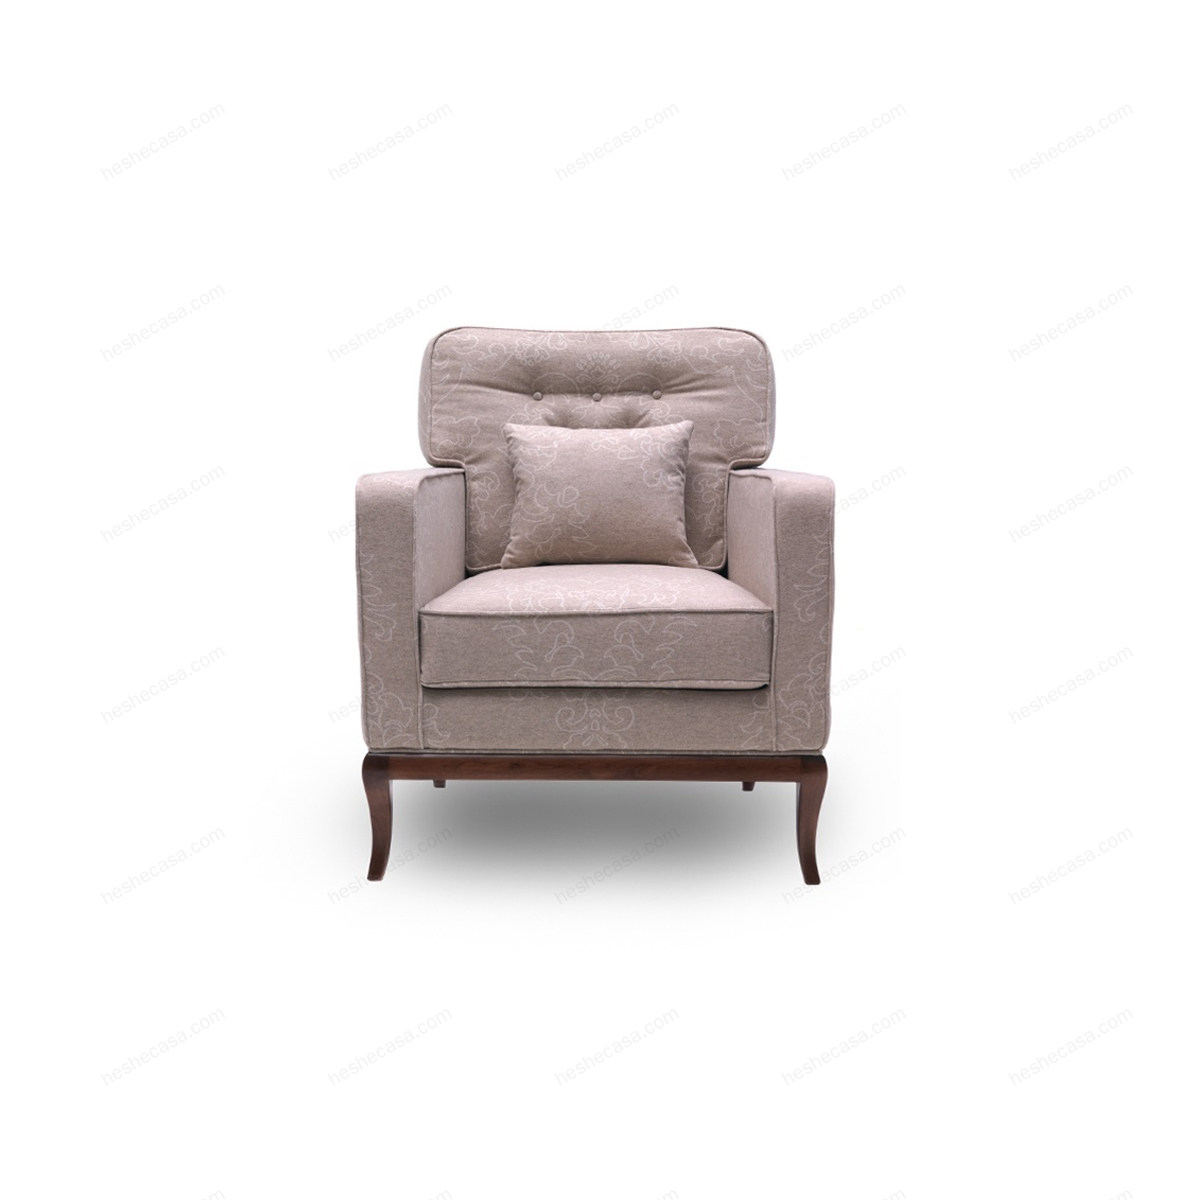 A 1608扶手椅